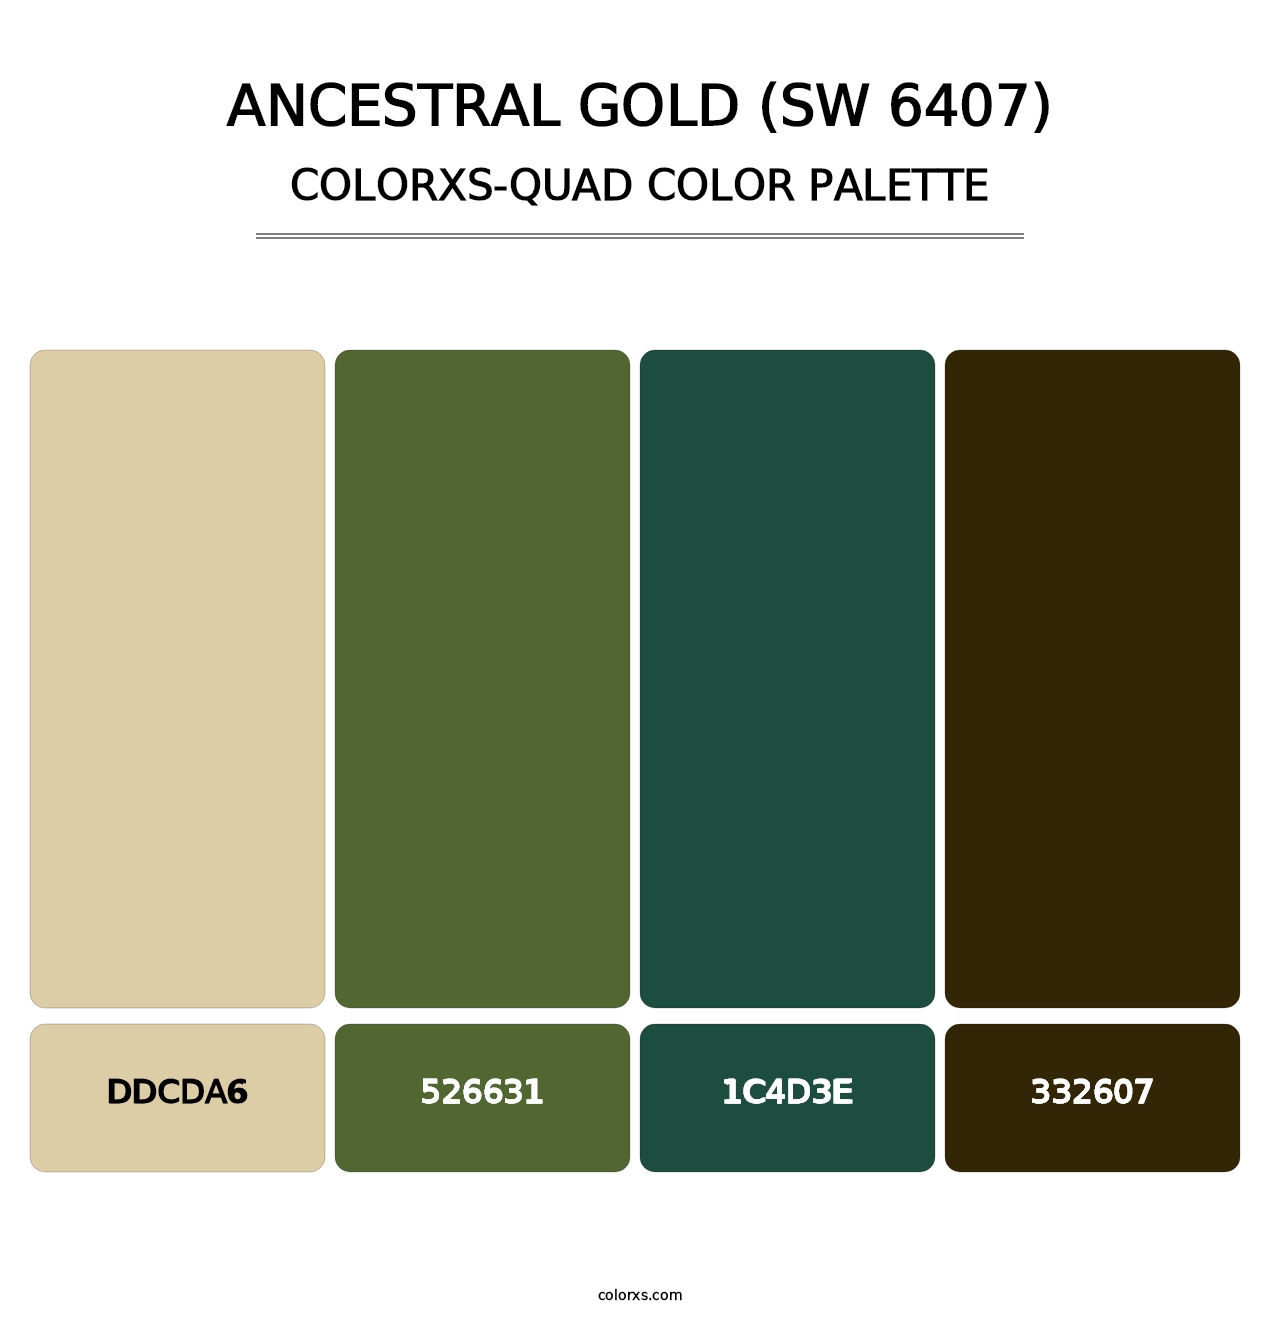 Ancestral Gold (SW 6407) - Colorxs Quad Palette